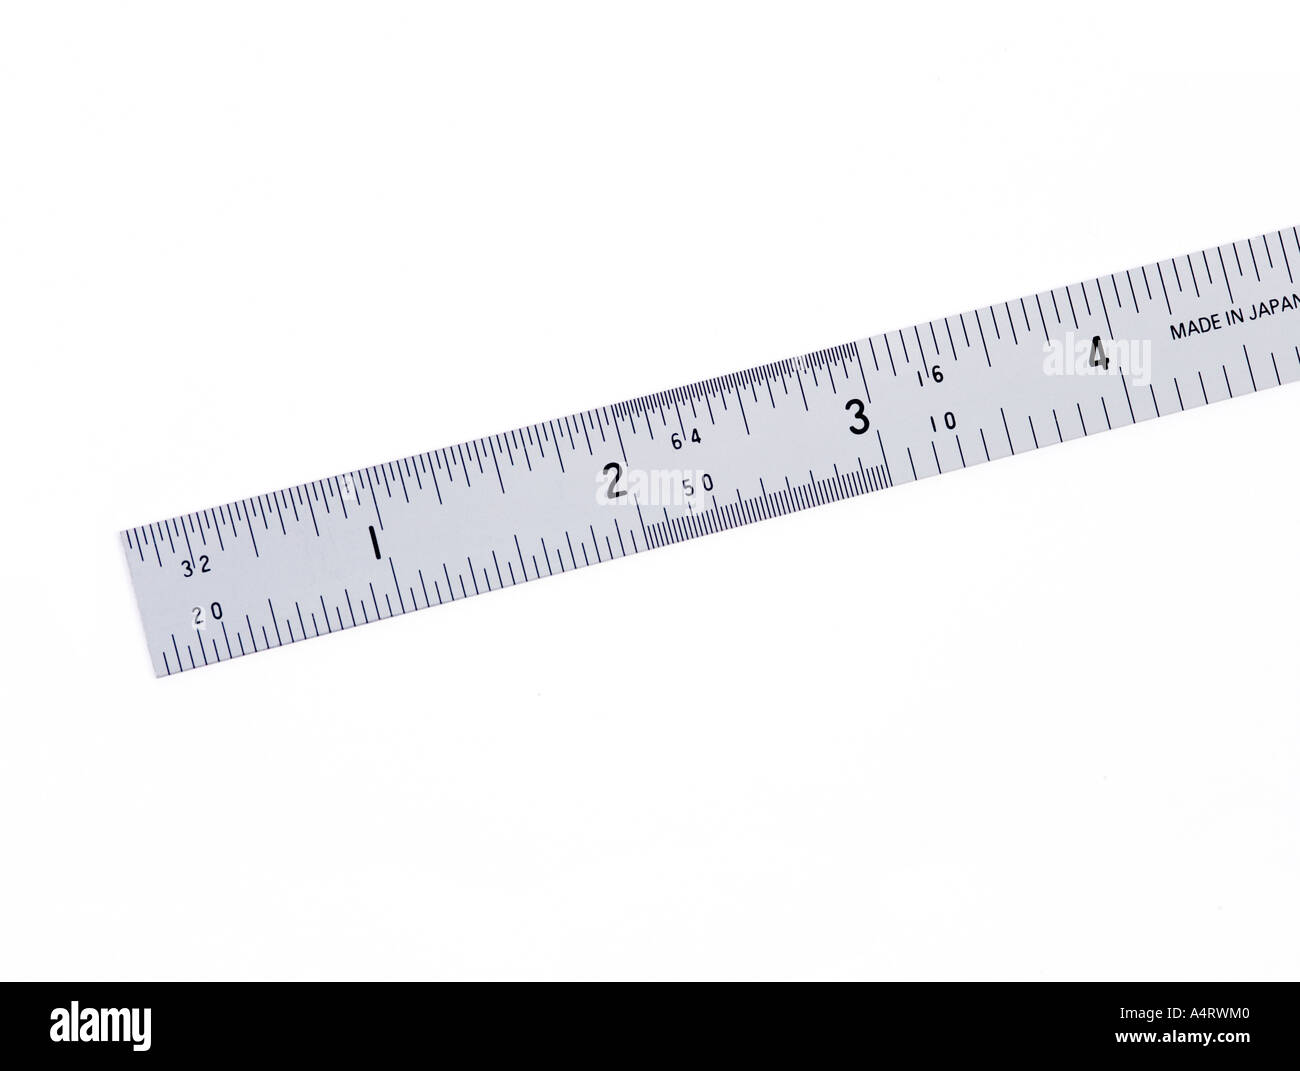 Cinta de medir en pulgadas hechas de tela y aislados contra el fondo blanco  Fotografía de stock - Alamy